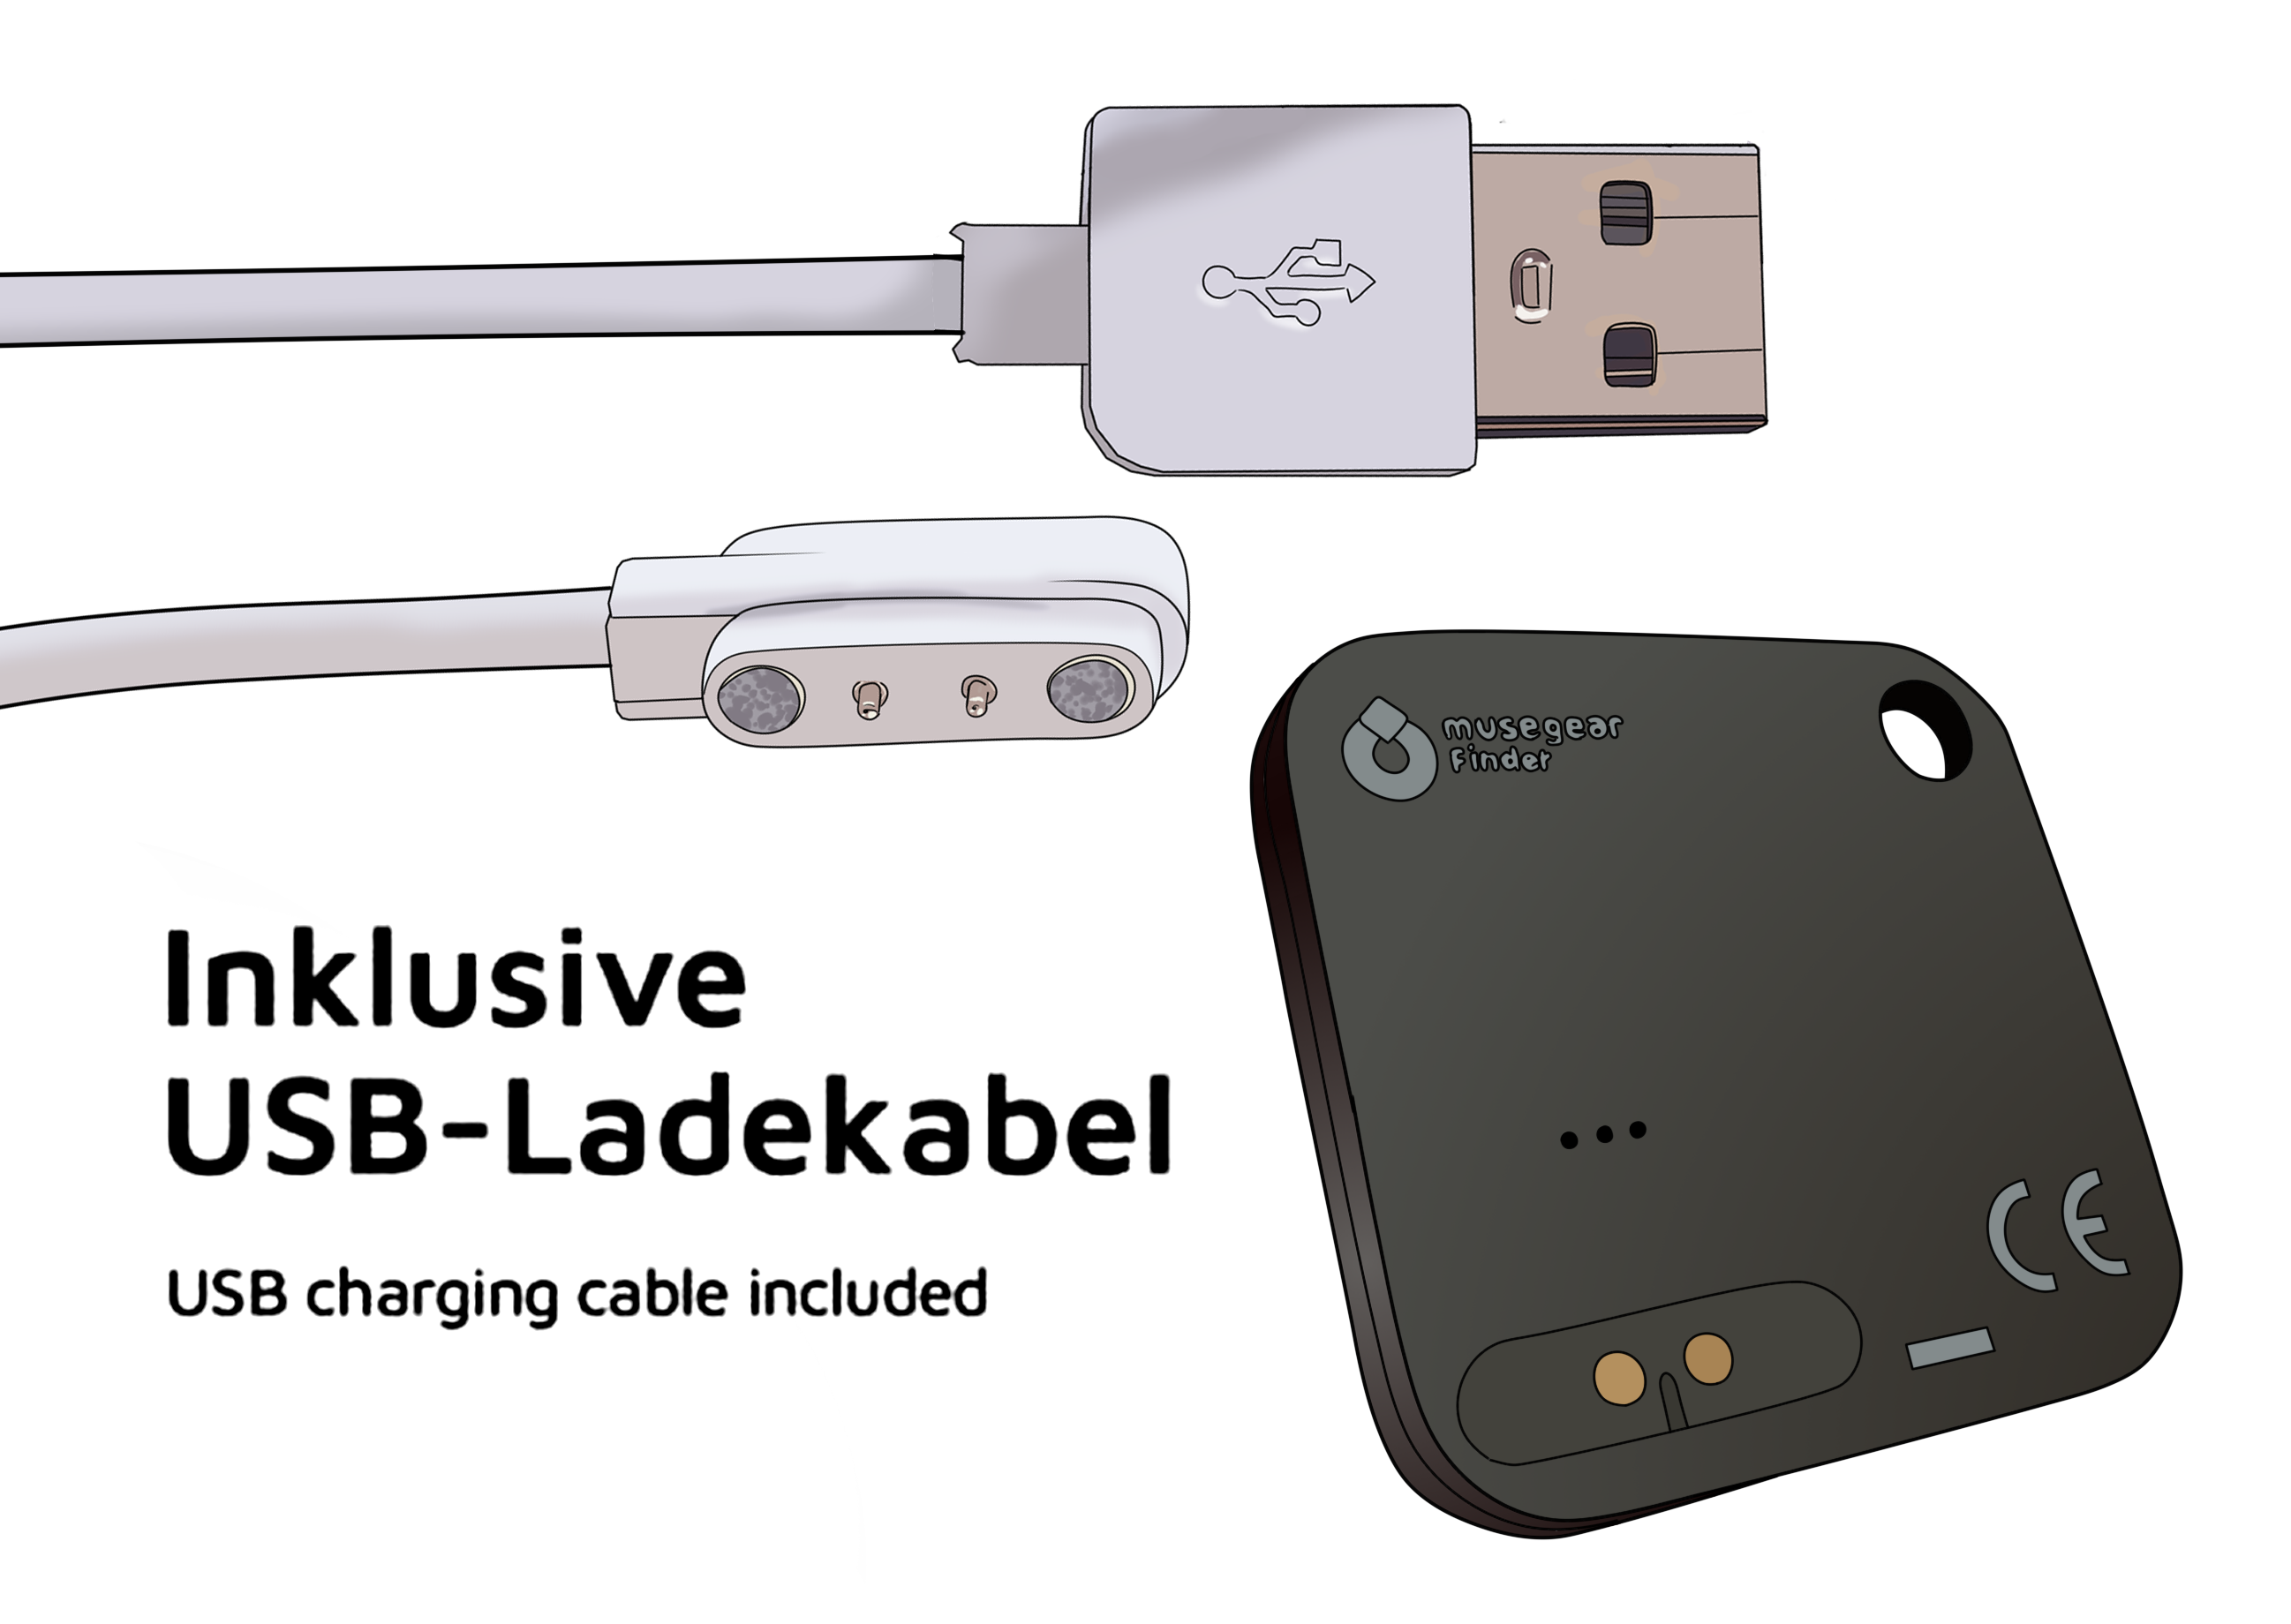 Bluetooth MUSEGEAR Schlüsselfinder finder recharge